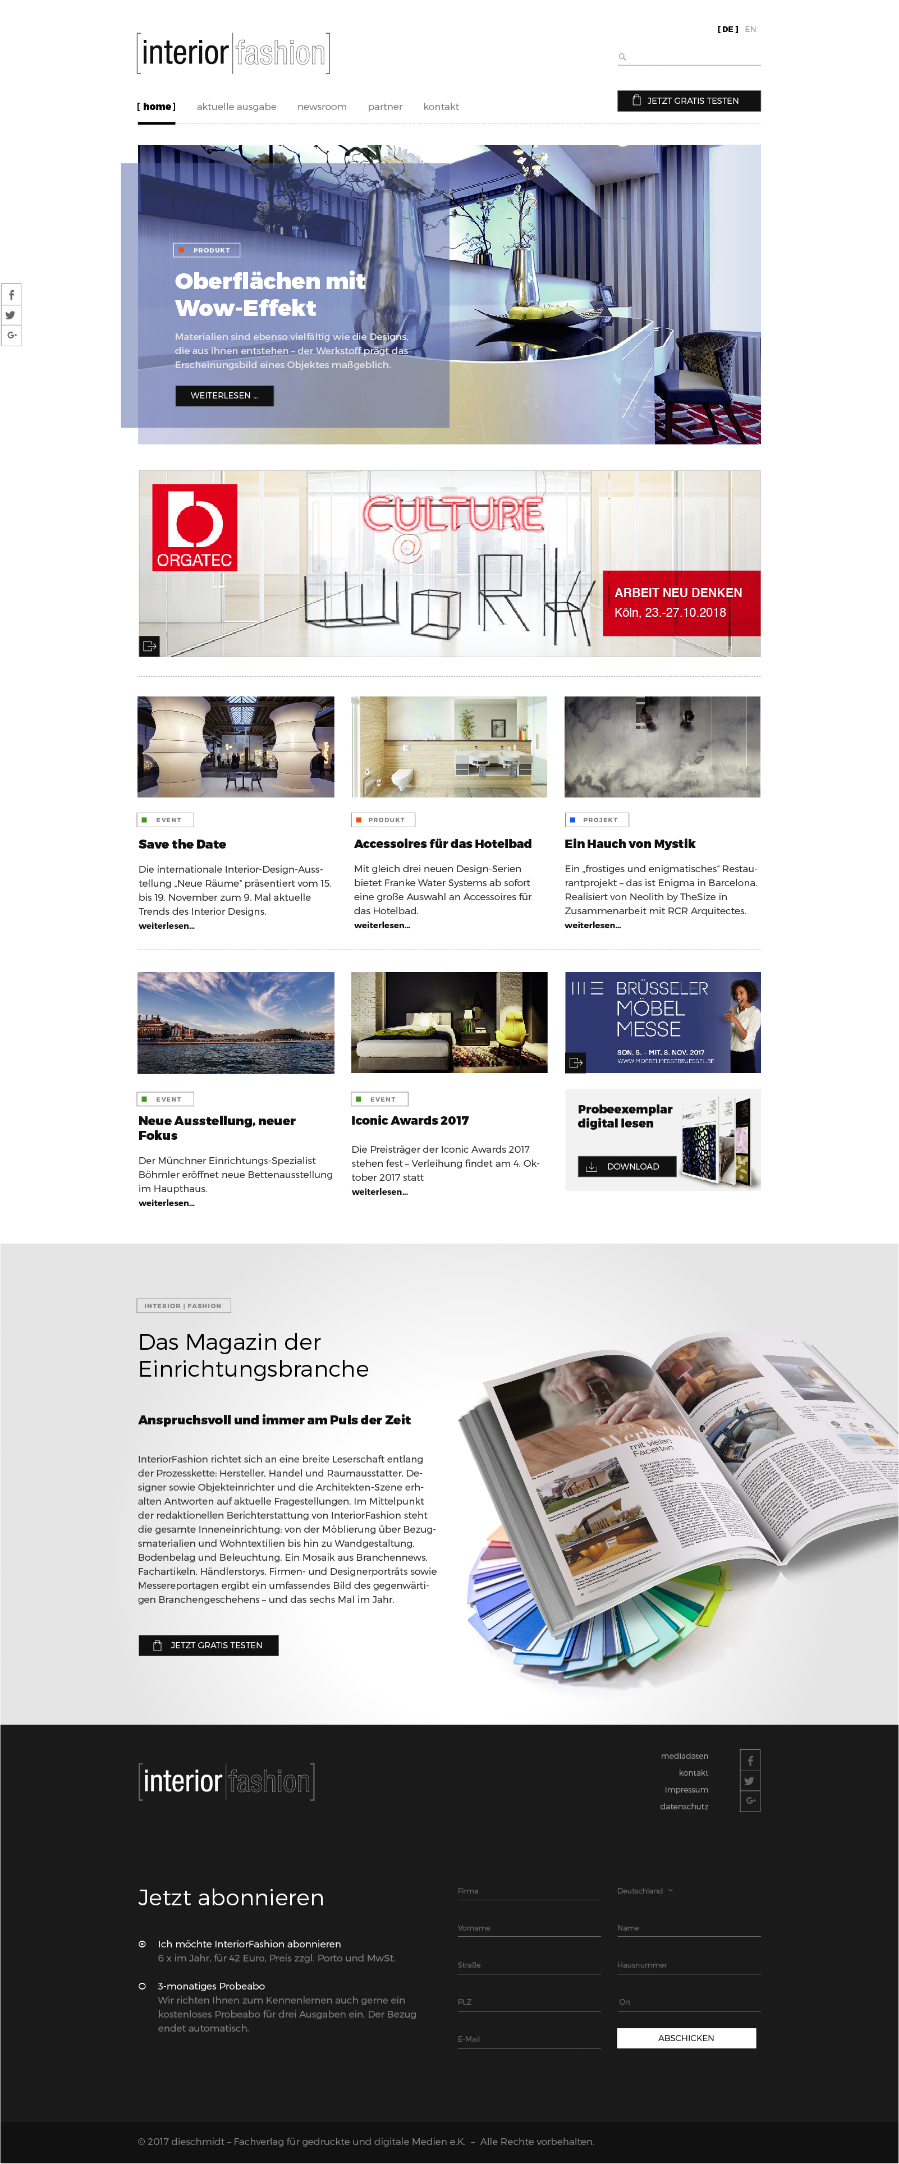 Werbeagentur in Nürnberg, Erfurt und Rosenheim - Webdesign